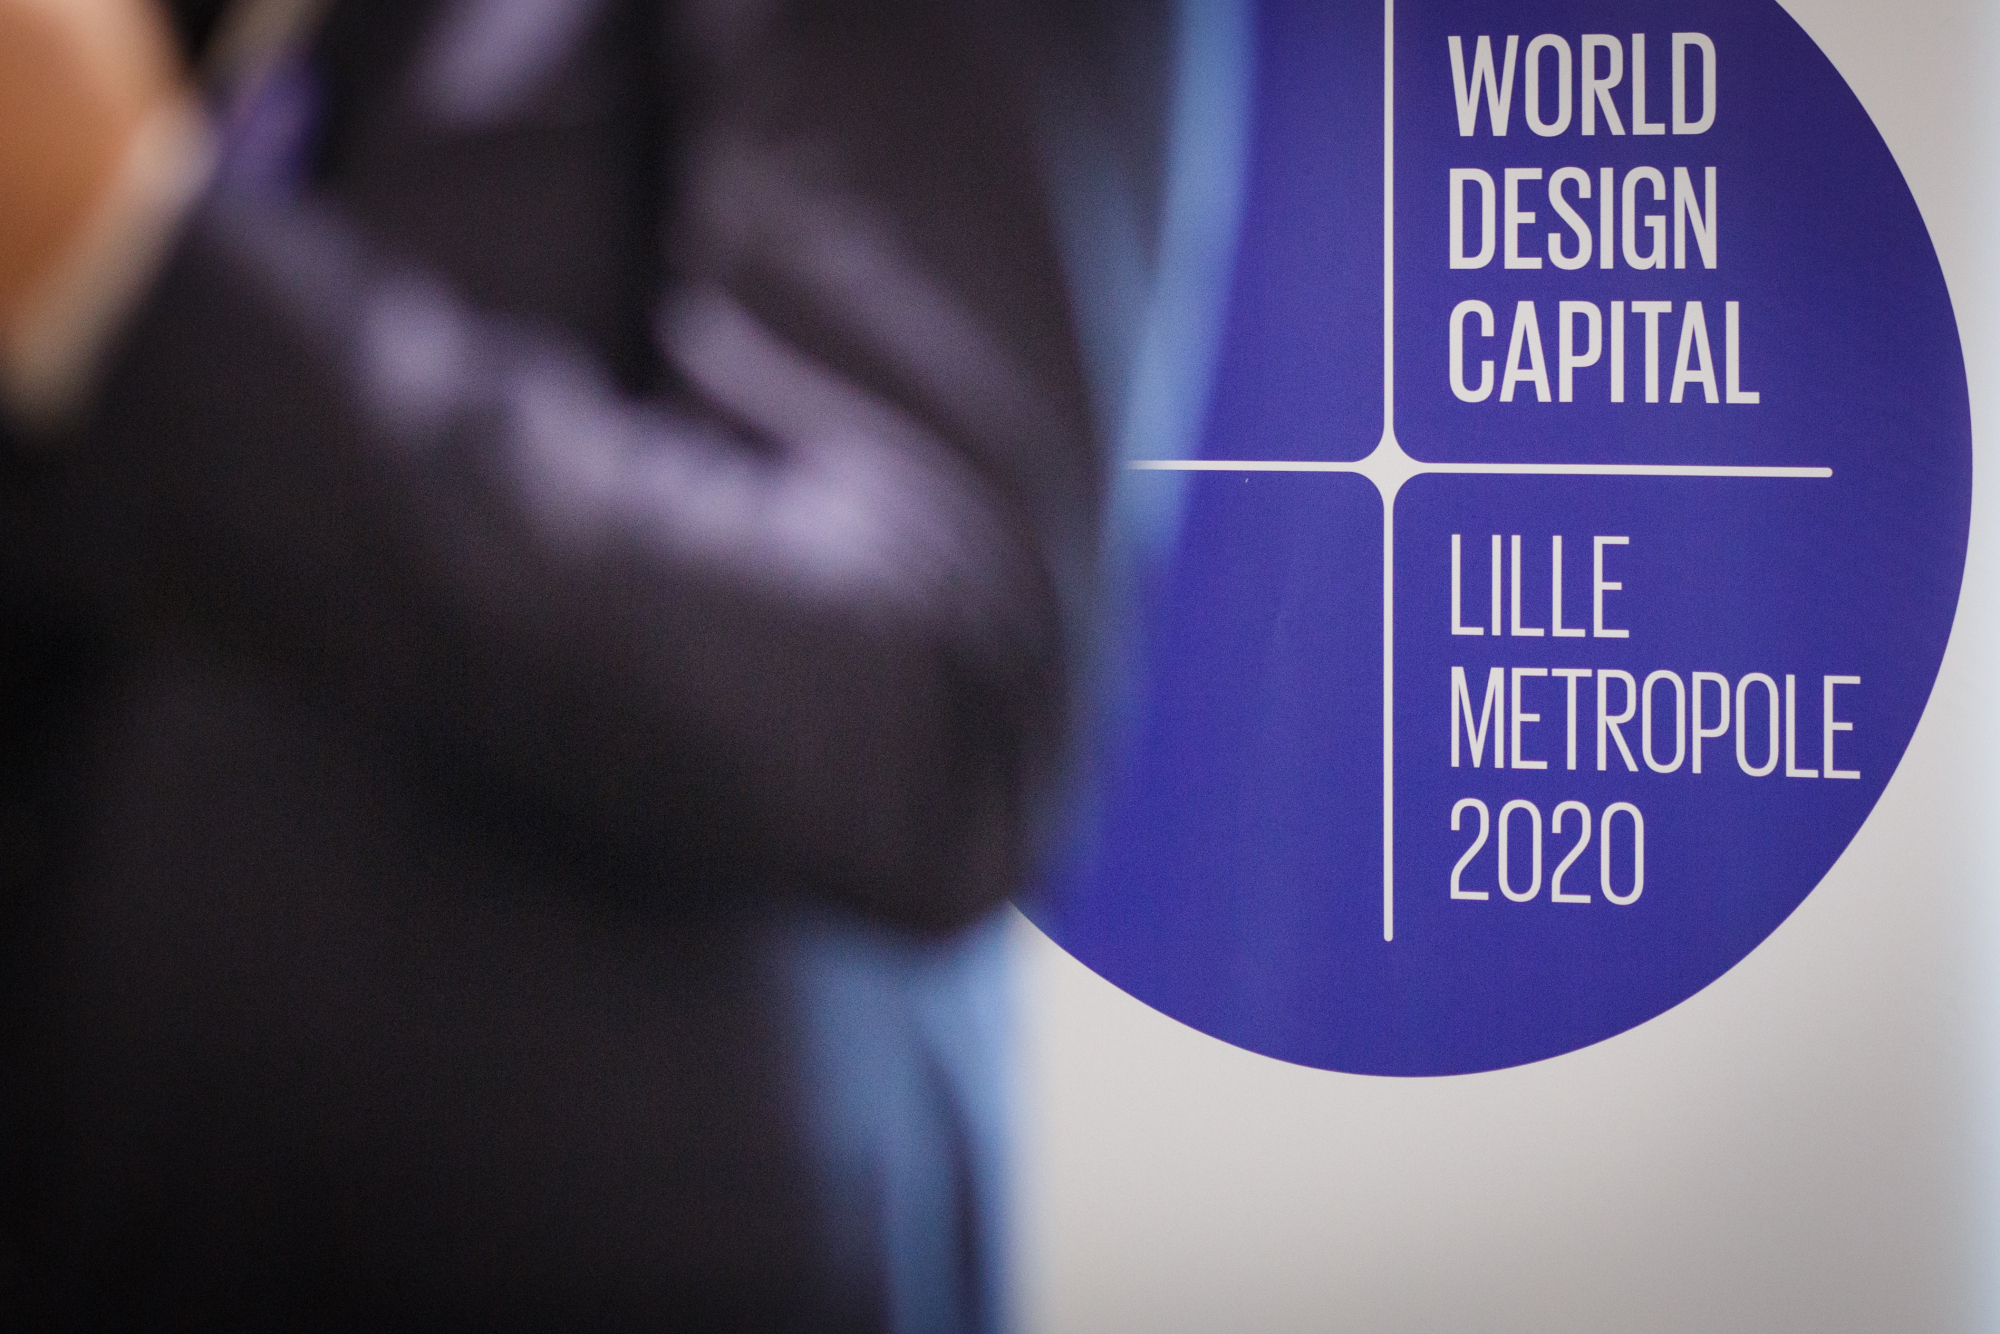 Lille Métropole 2020 Capitale mondiale du design